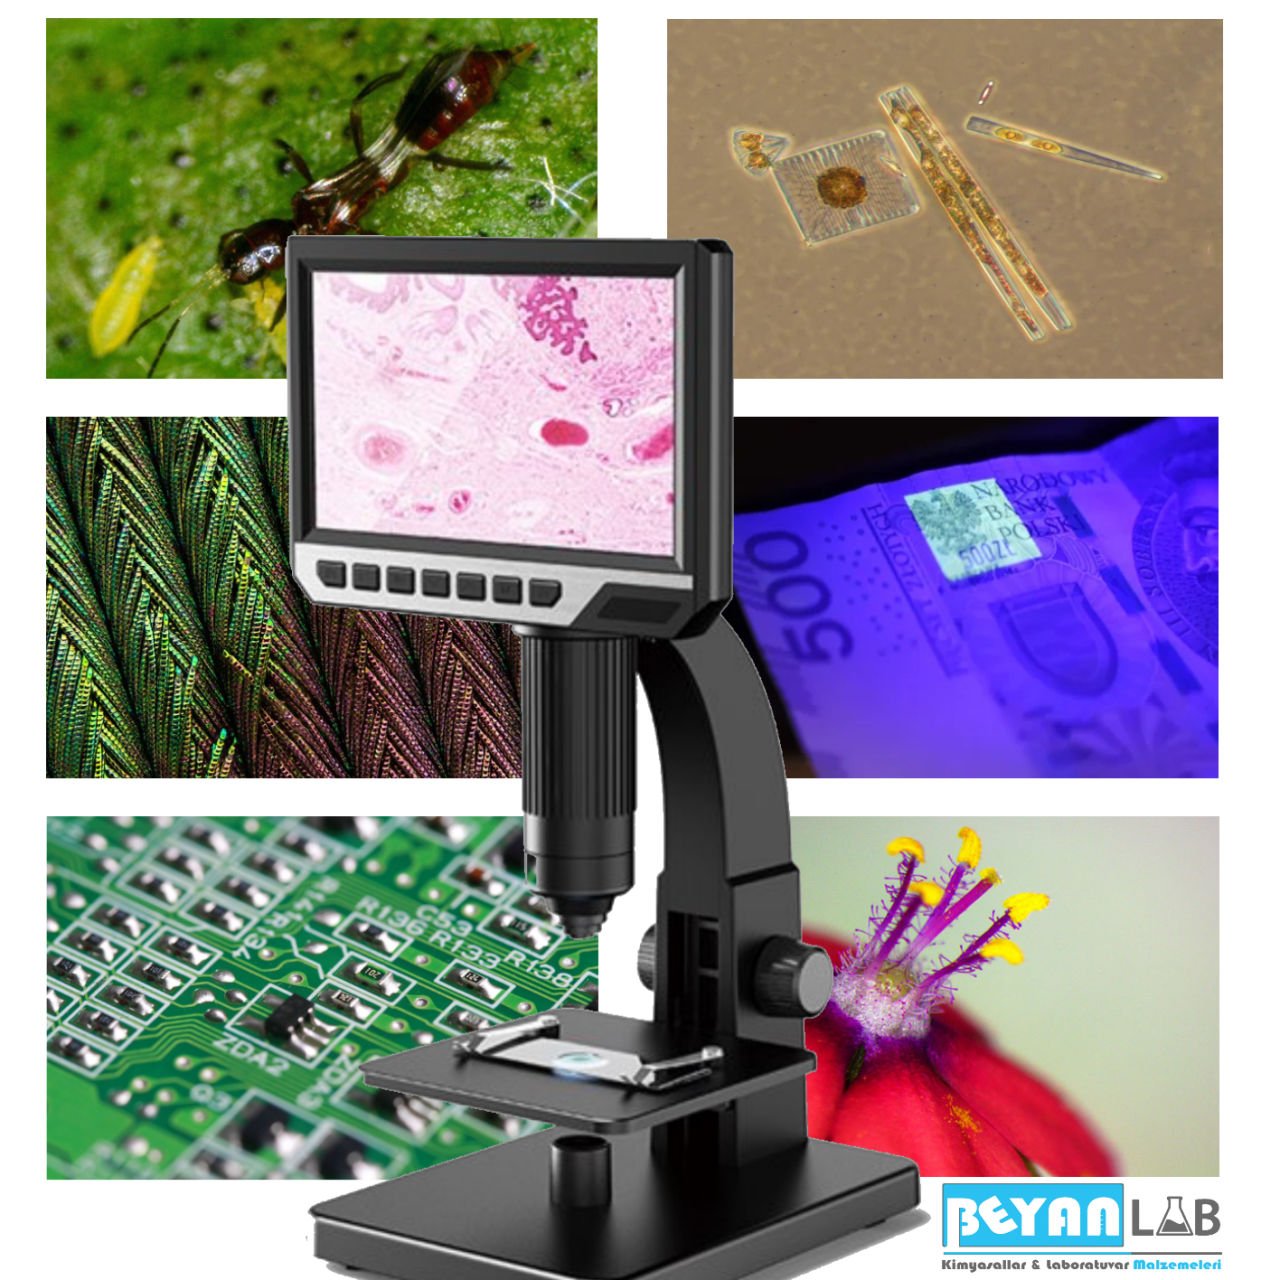 Dijital Mikroskop Nedir? Özellikleri ve Kullanım Alanları